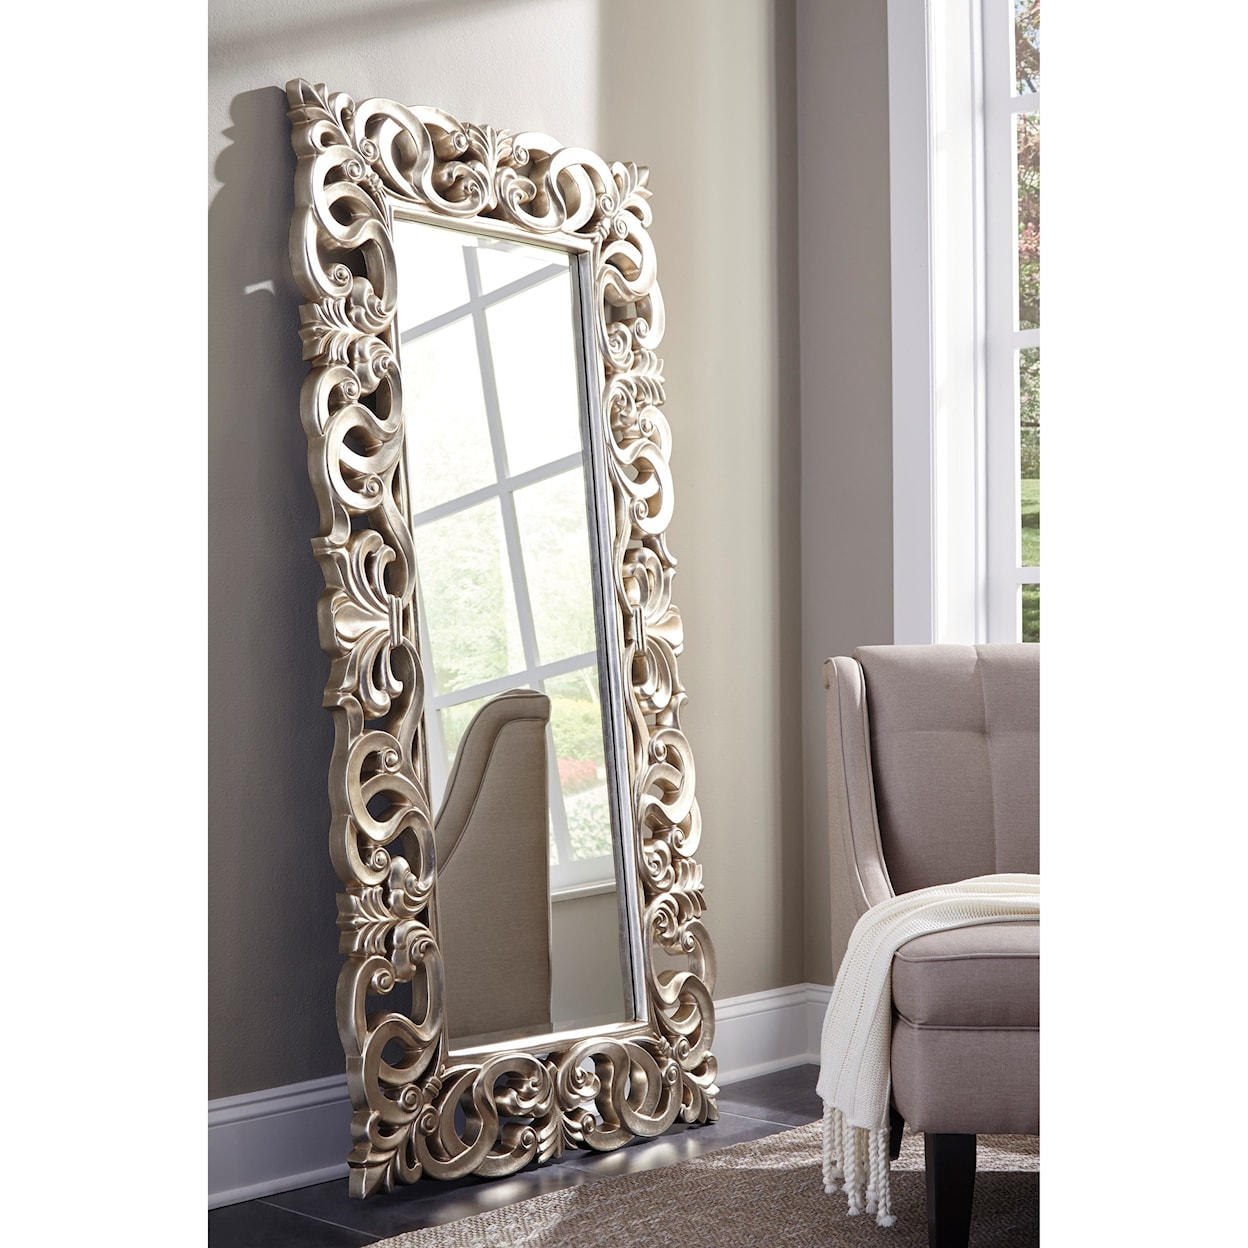 Ashley Furniture Signature Design Accent Mirrors Lucia Antique Silver Finish Accent Mirror